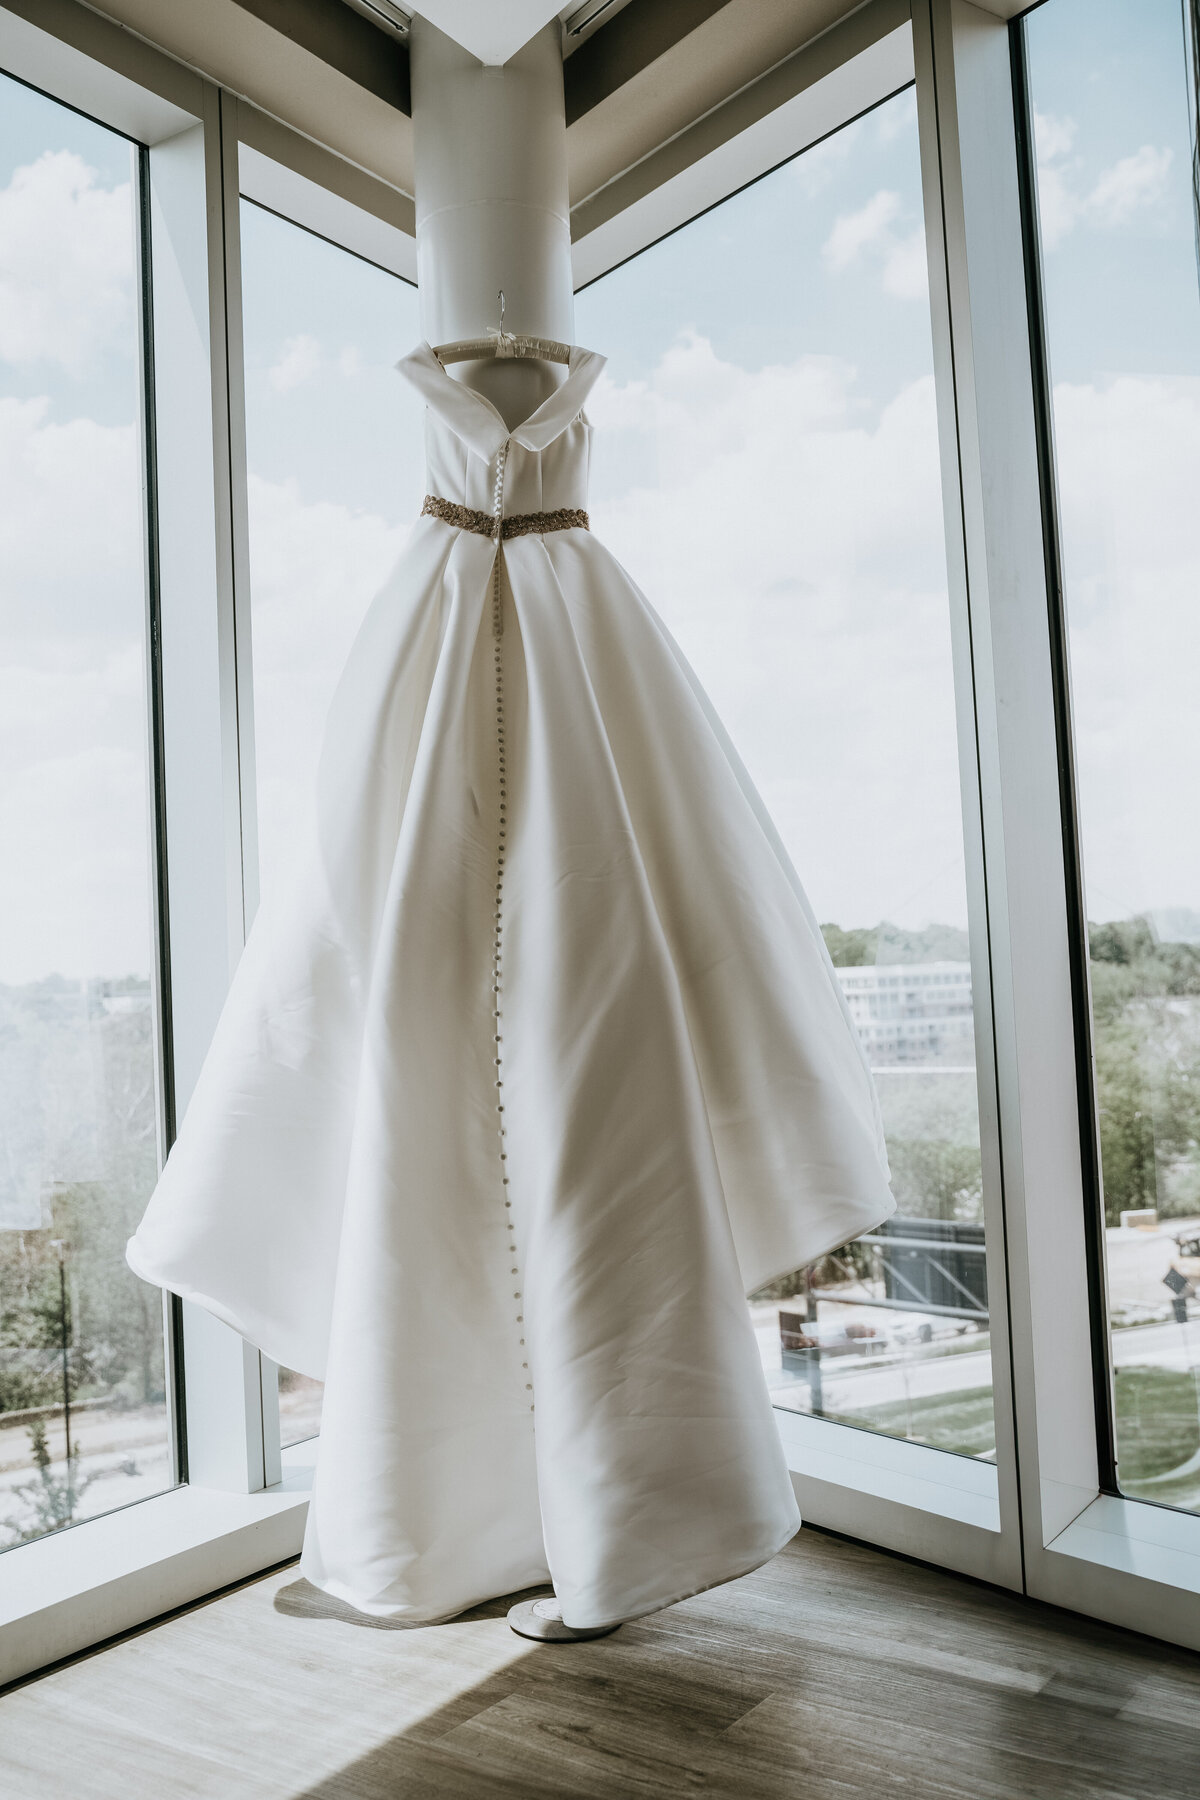 Dress hung in window in Columbus